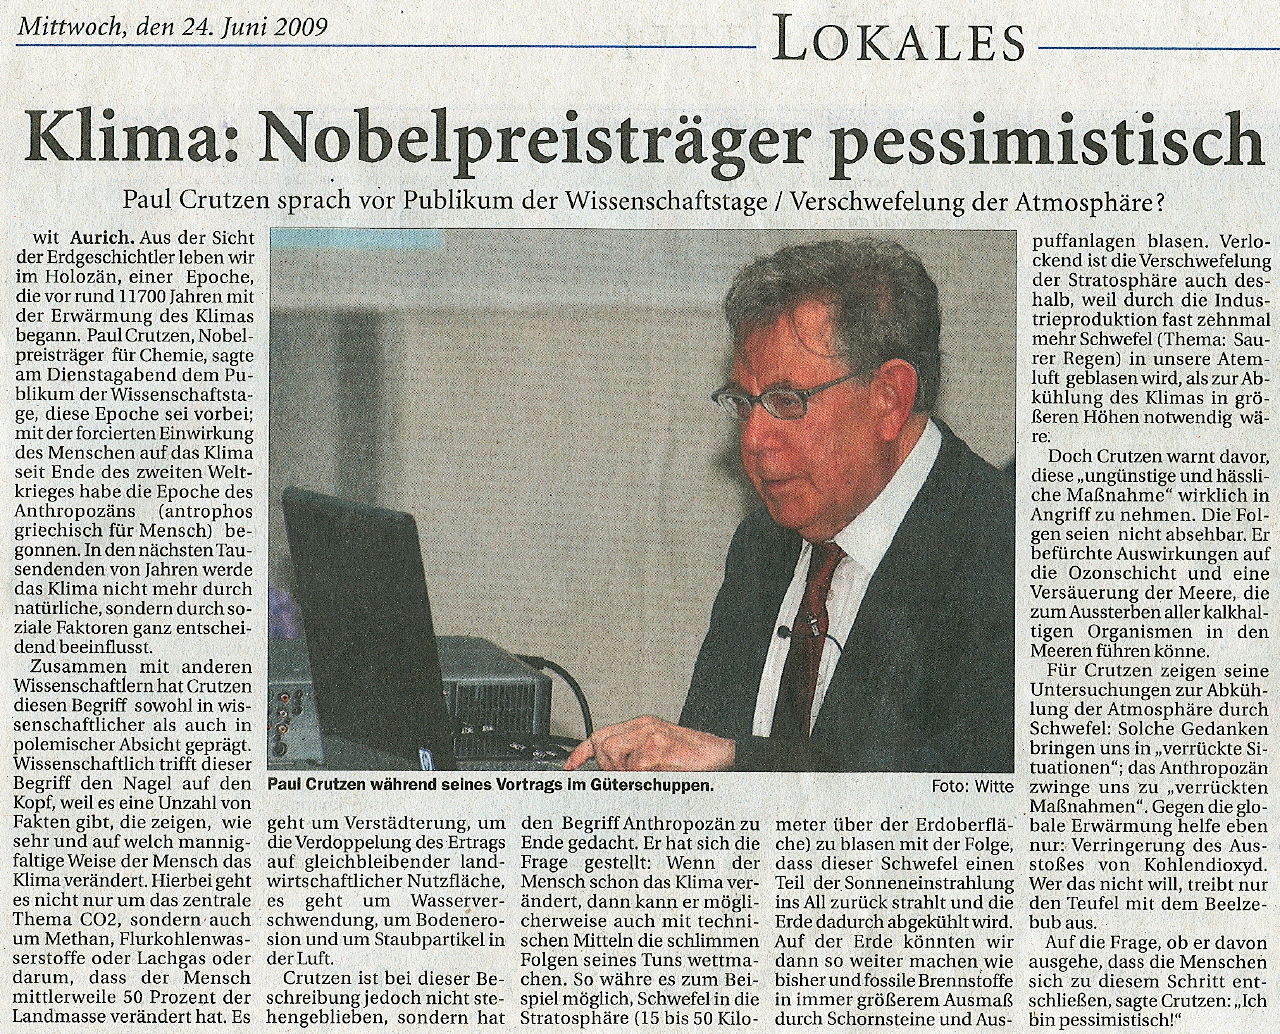 Artikel der Ostfriesische Nachrichten vom 24.06.2009, 584 k